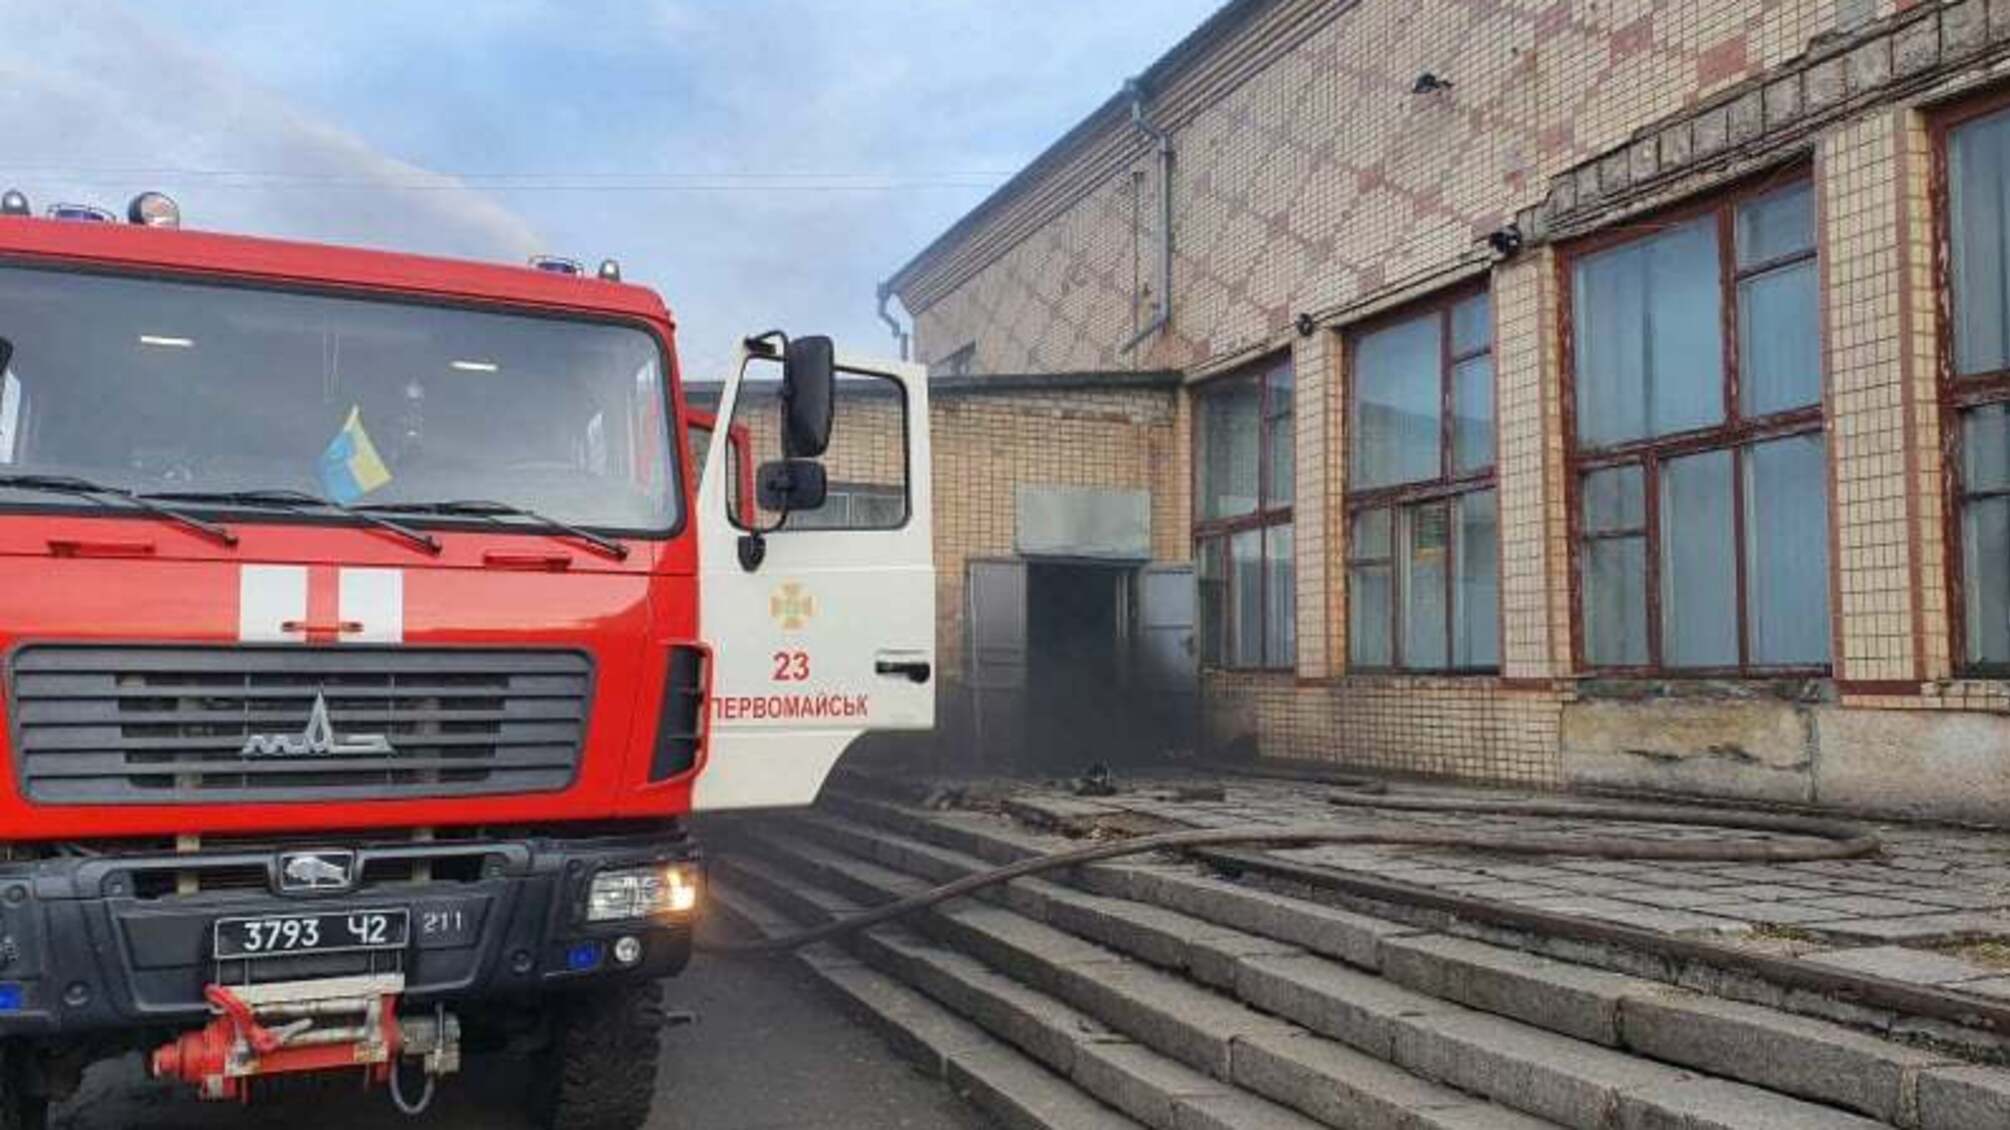 Миколаївська область: вогнеборці ліквідували пожежу в приміщенні фотостудії